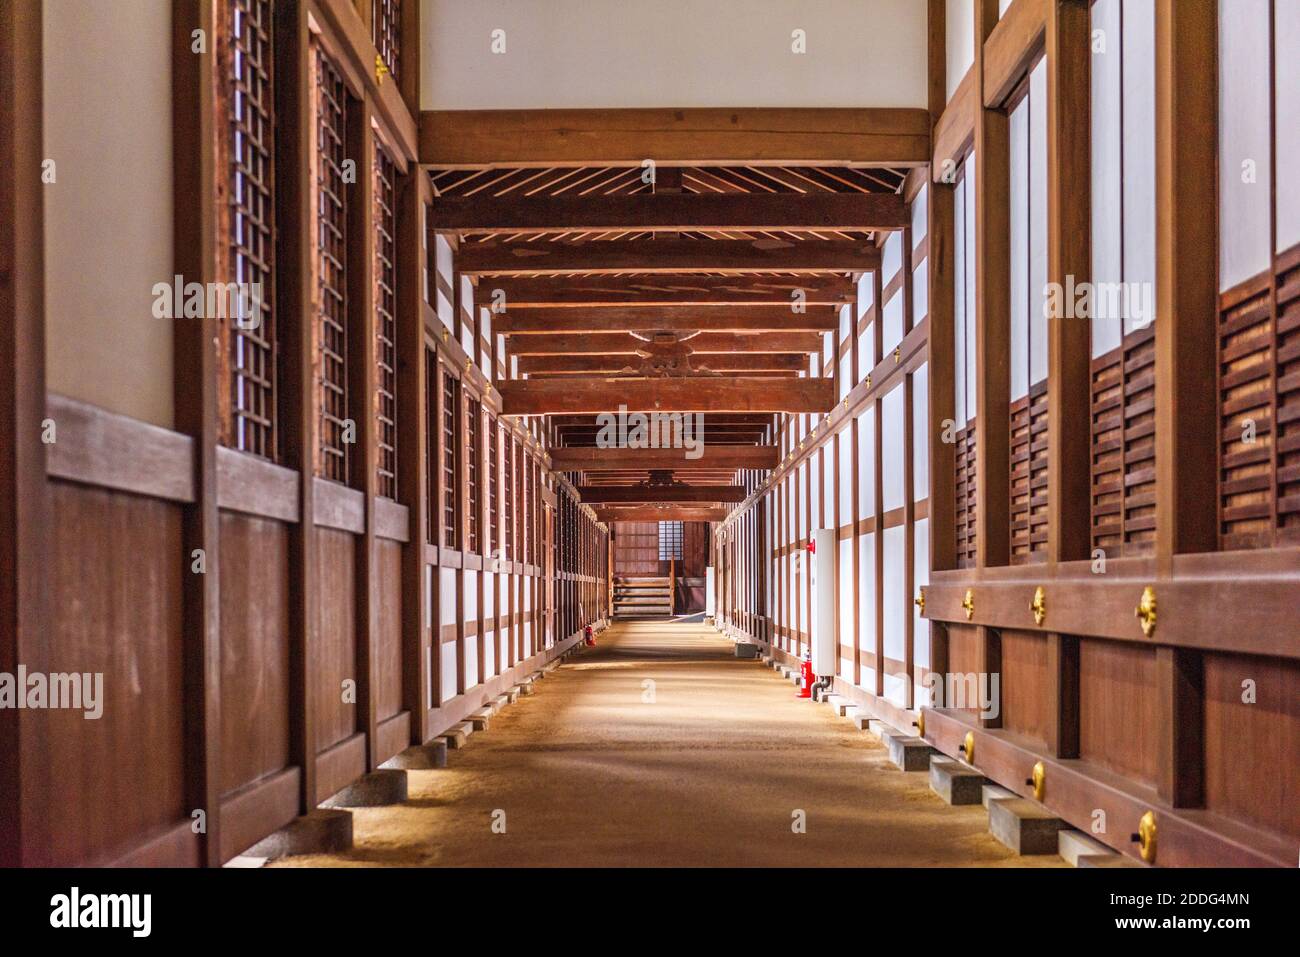 TAKAOKA, JAPAN - 30. JANUAR 2017: Ein innerer Flur des Zuiryuji-Tempels. Der Komplex stammt aus dem Jahr 1613. Stockfoto